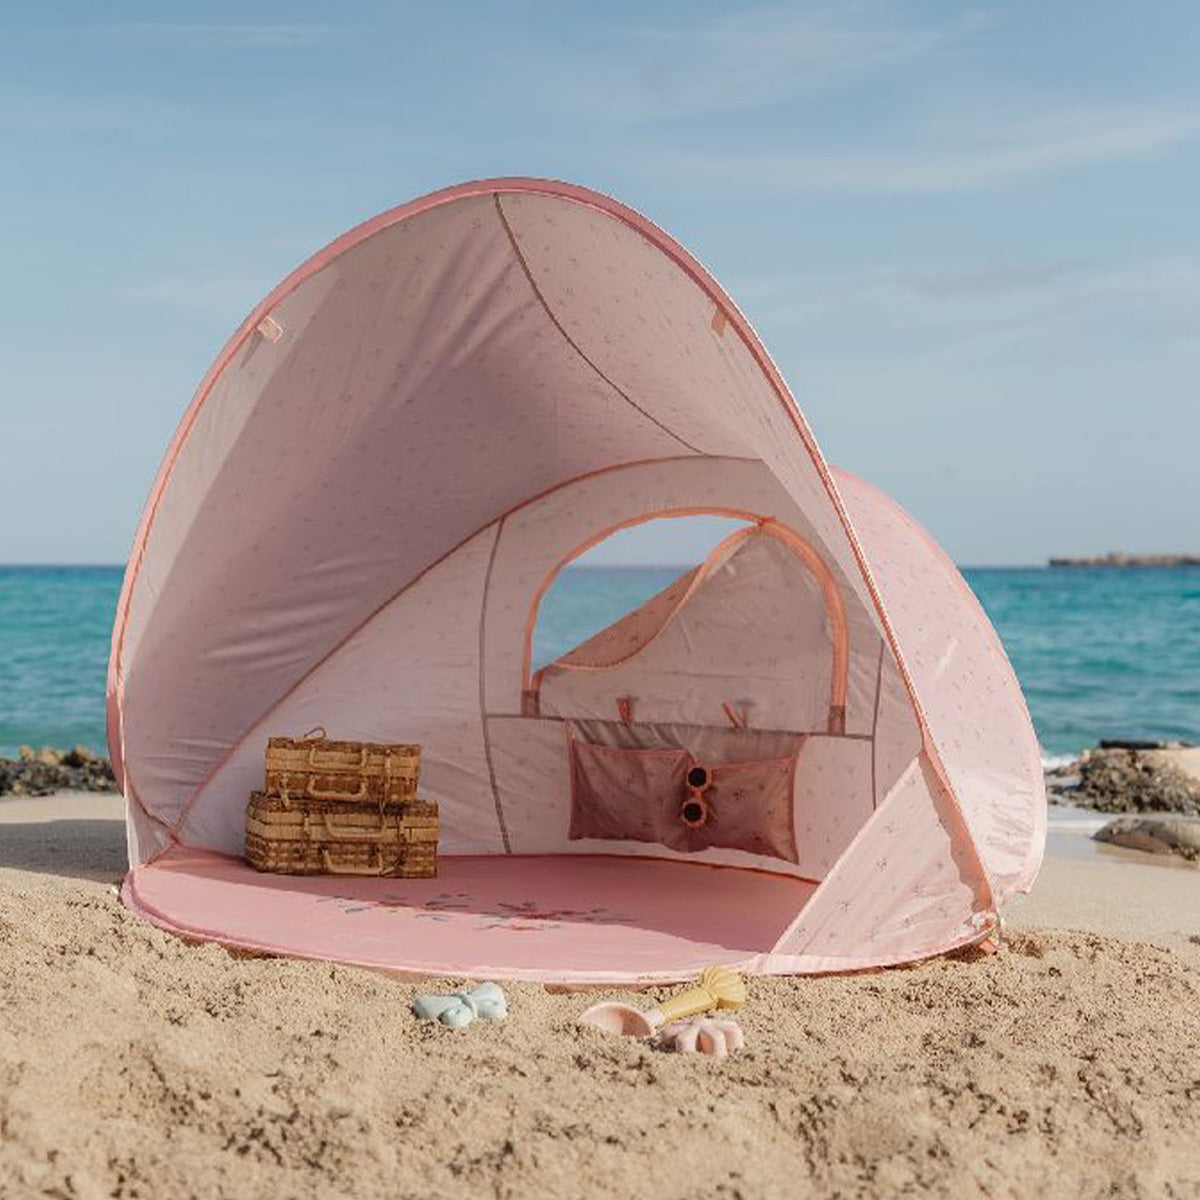 Hebben jullie een heerlijk dagje strand op de planning staan? Dan kan deze ocean dreams pop-up tent in roze van Little Dutch niet ontbreken in de strandtas. Deze strandtent is namelijk ideaal voor elke stranddag.VanZus